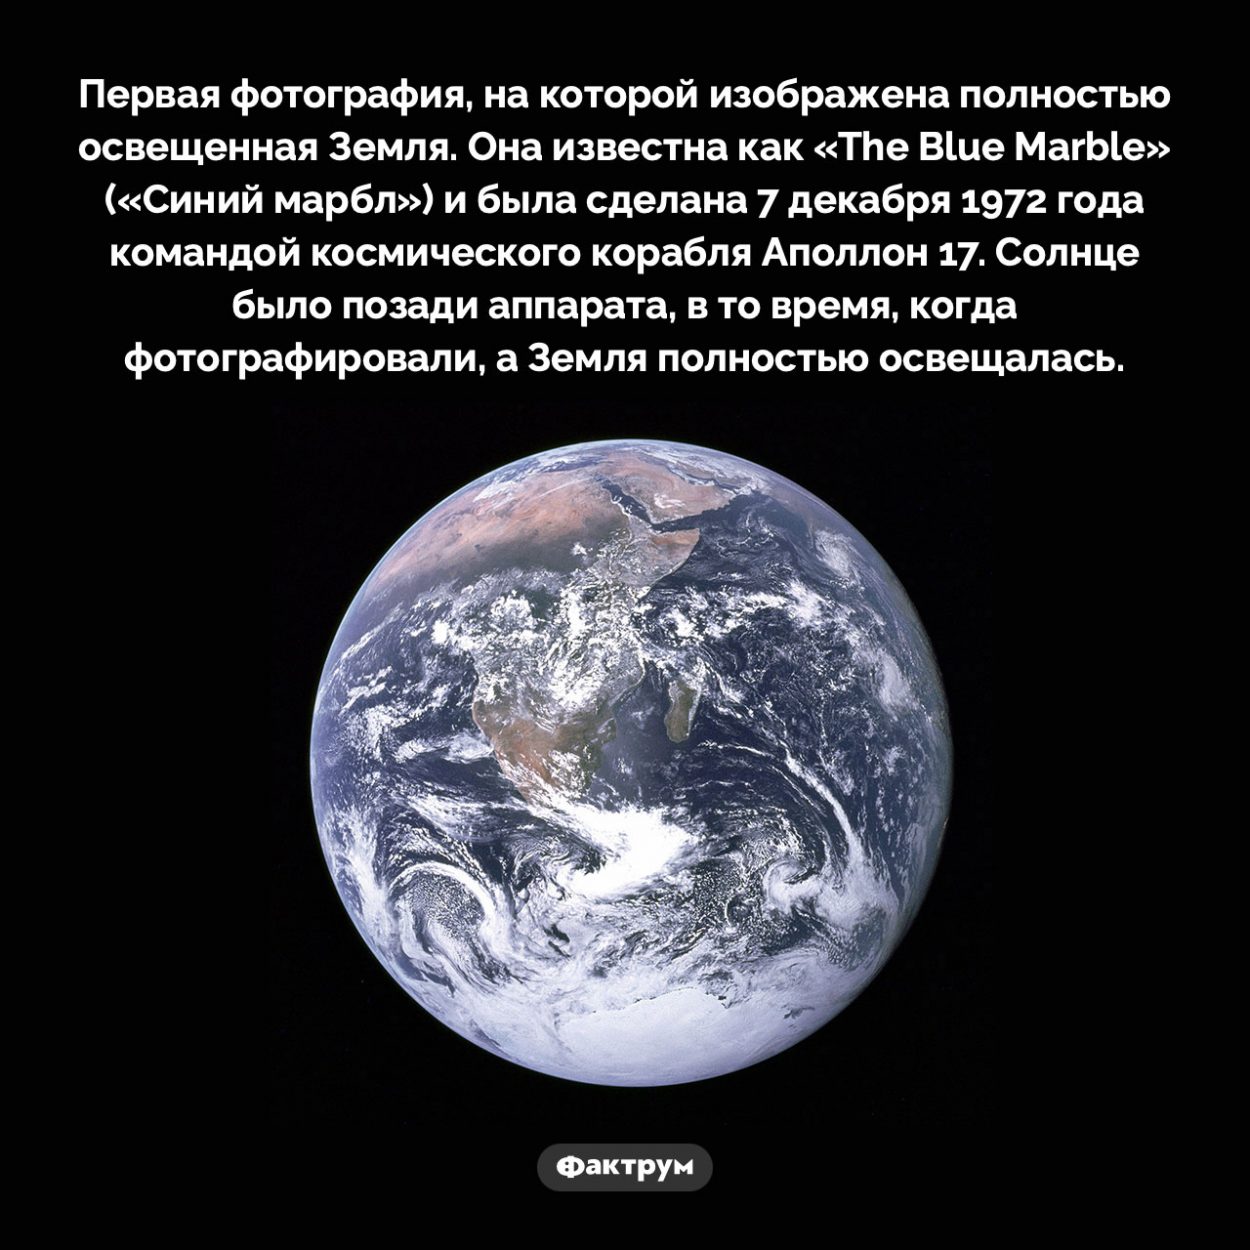 Синий марбл. Первая фотография, на которой изображена полностью освещенная Земля. Она известна как «The Blue Marble» («Синий марбл») и была сделана 7 декабря 1972 года командой космического корабля Аполлон 17. Солнце было позади аппарата, в то время, когда фотографировали, а Земля полностью освещалась.